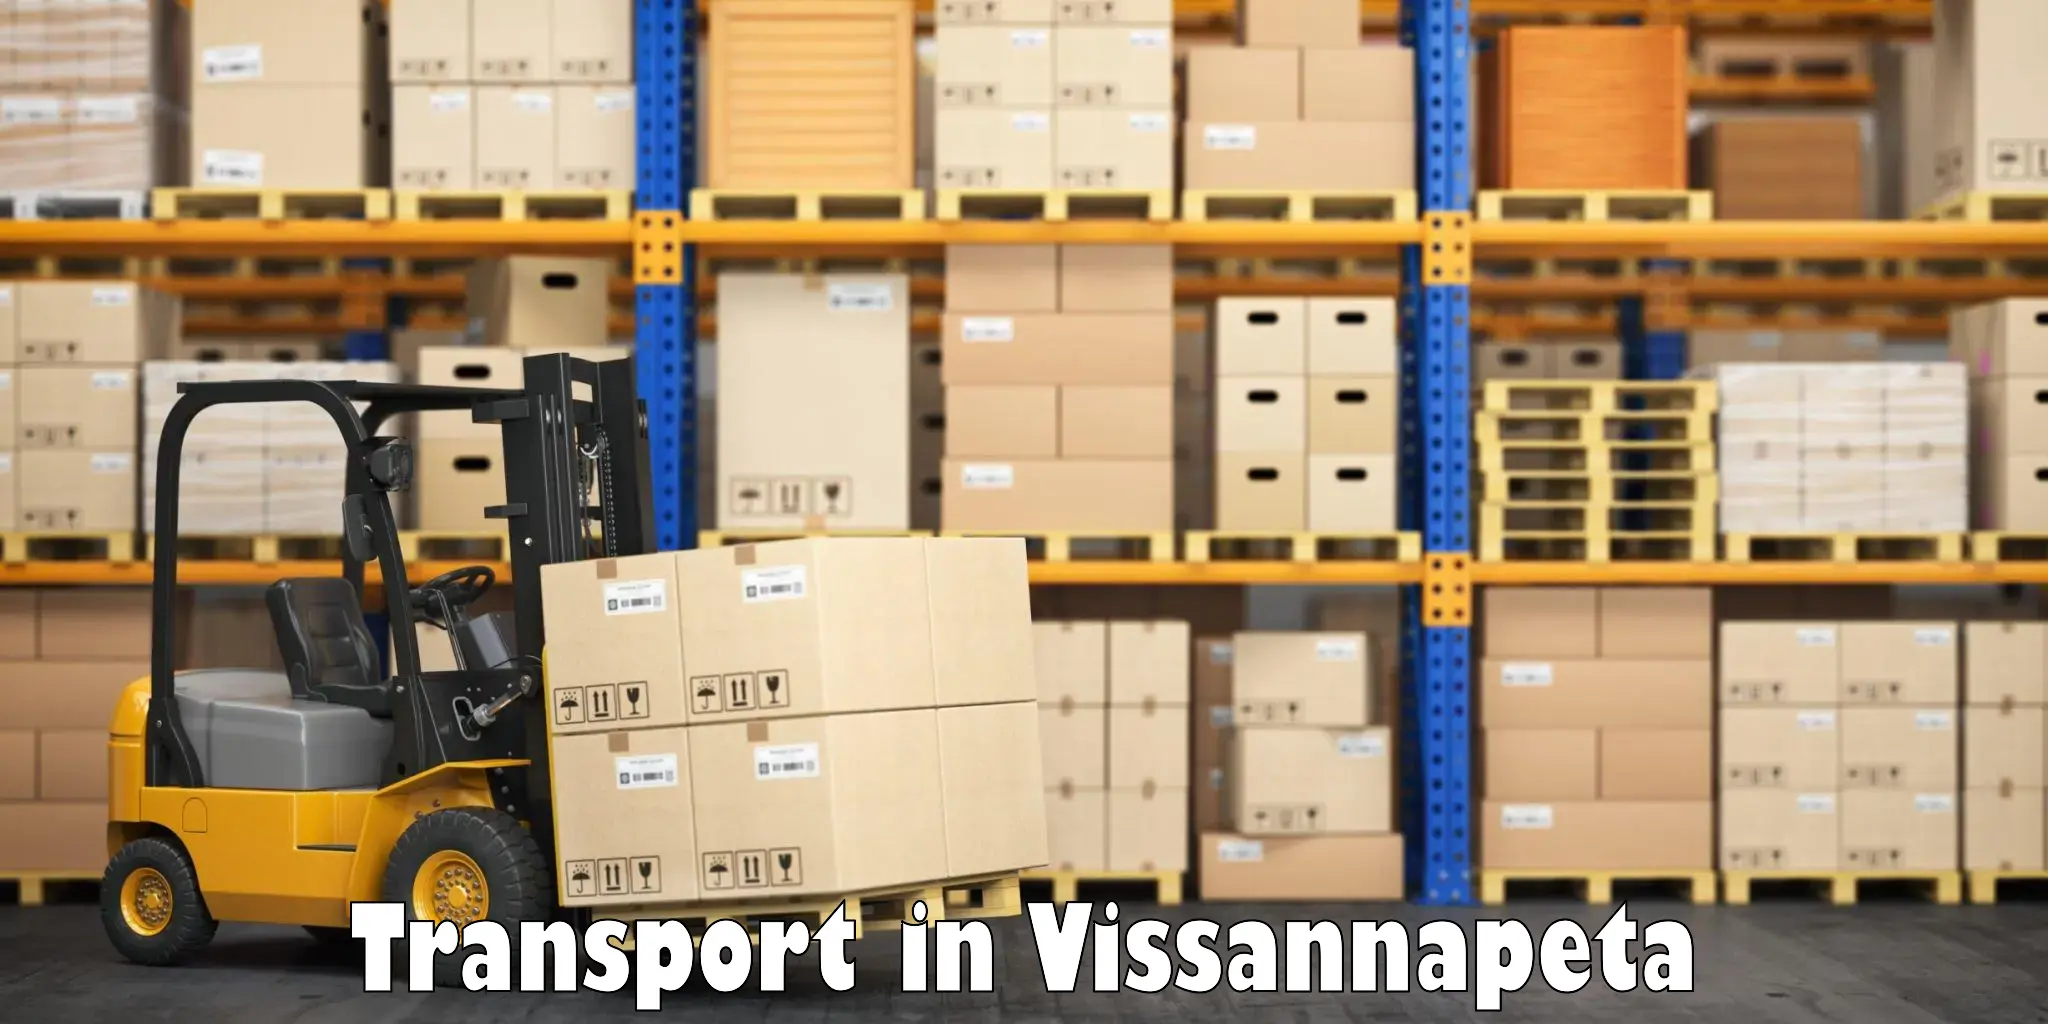 International cargo transportation services in Vissannapeta